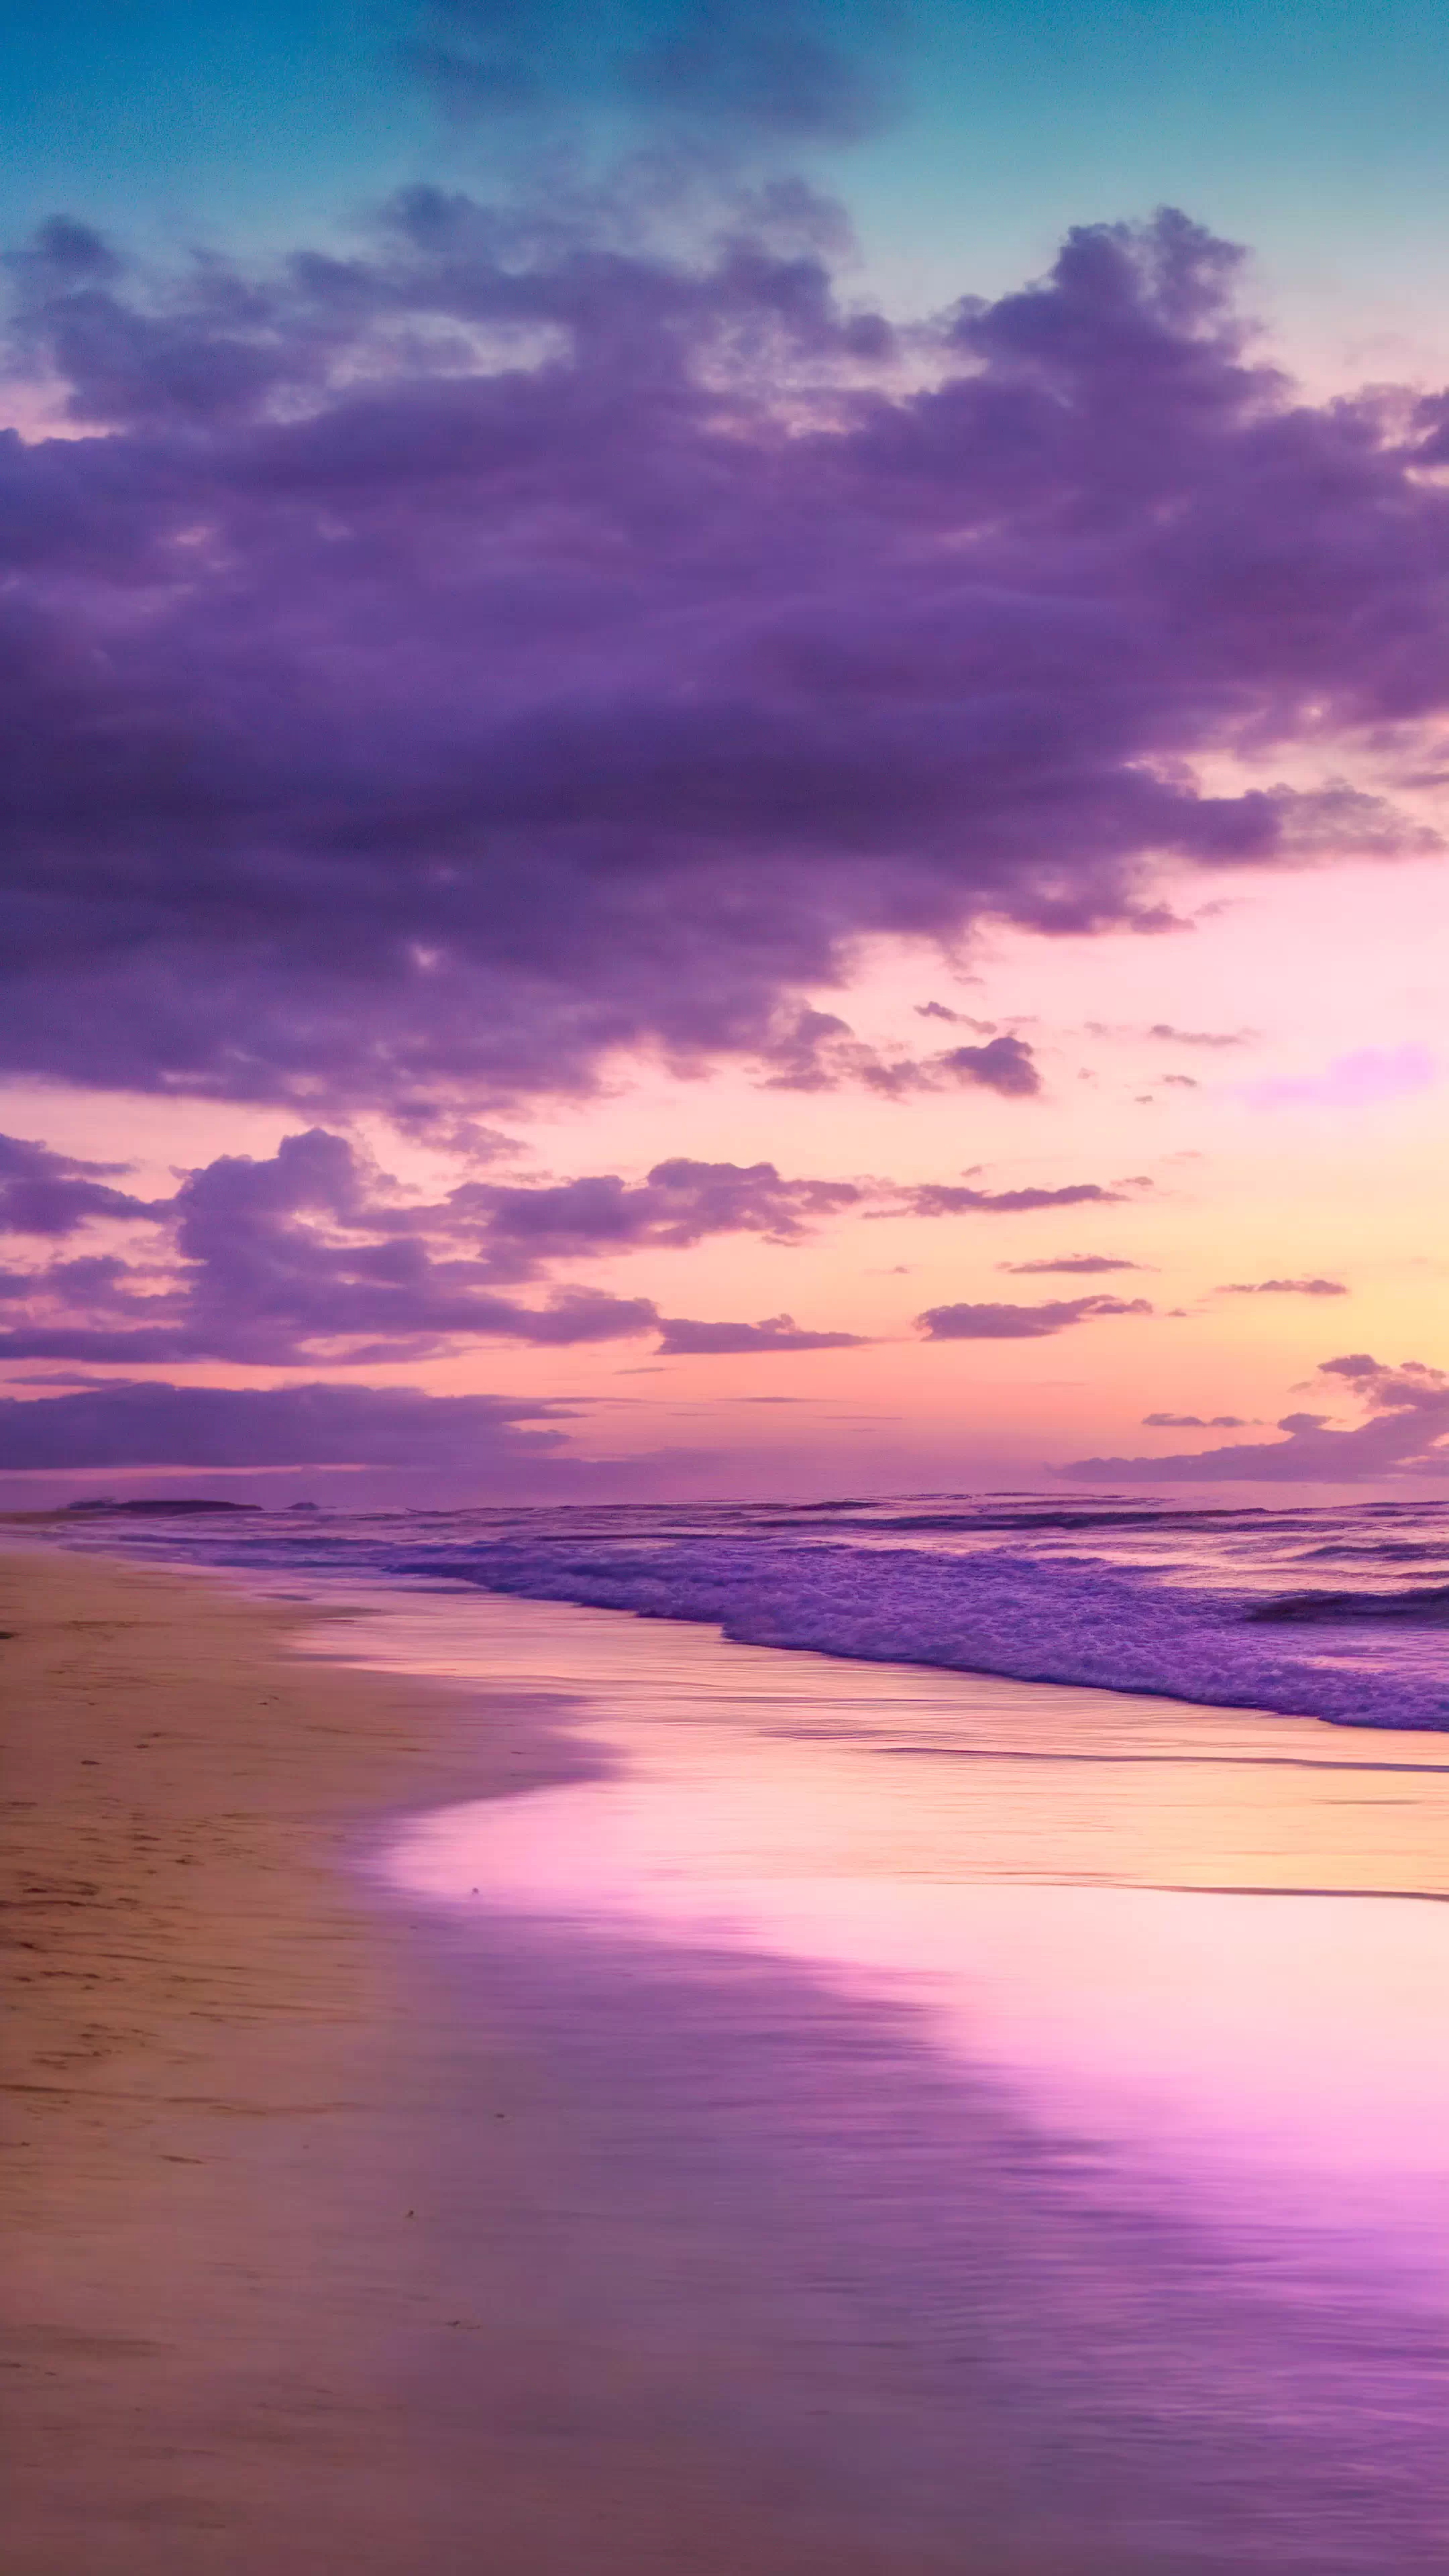 Téléchargez ce fond d'écran nature en HD pour votre iPhone, capturant une plage tranquille au crépuscule avec un ciel peint en nuances de violet et de rose, et laissez votre écran devenir une fenêtre sur un coucher de soleil côtier serein.